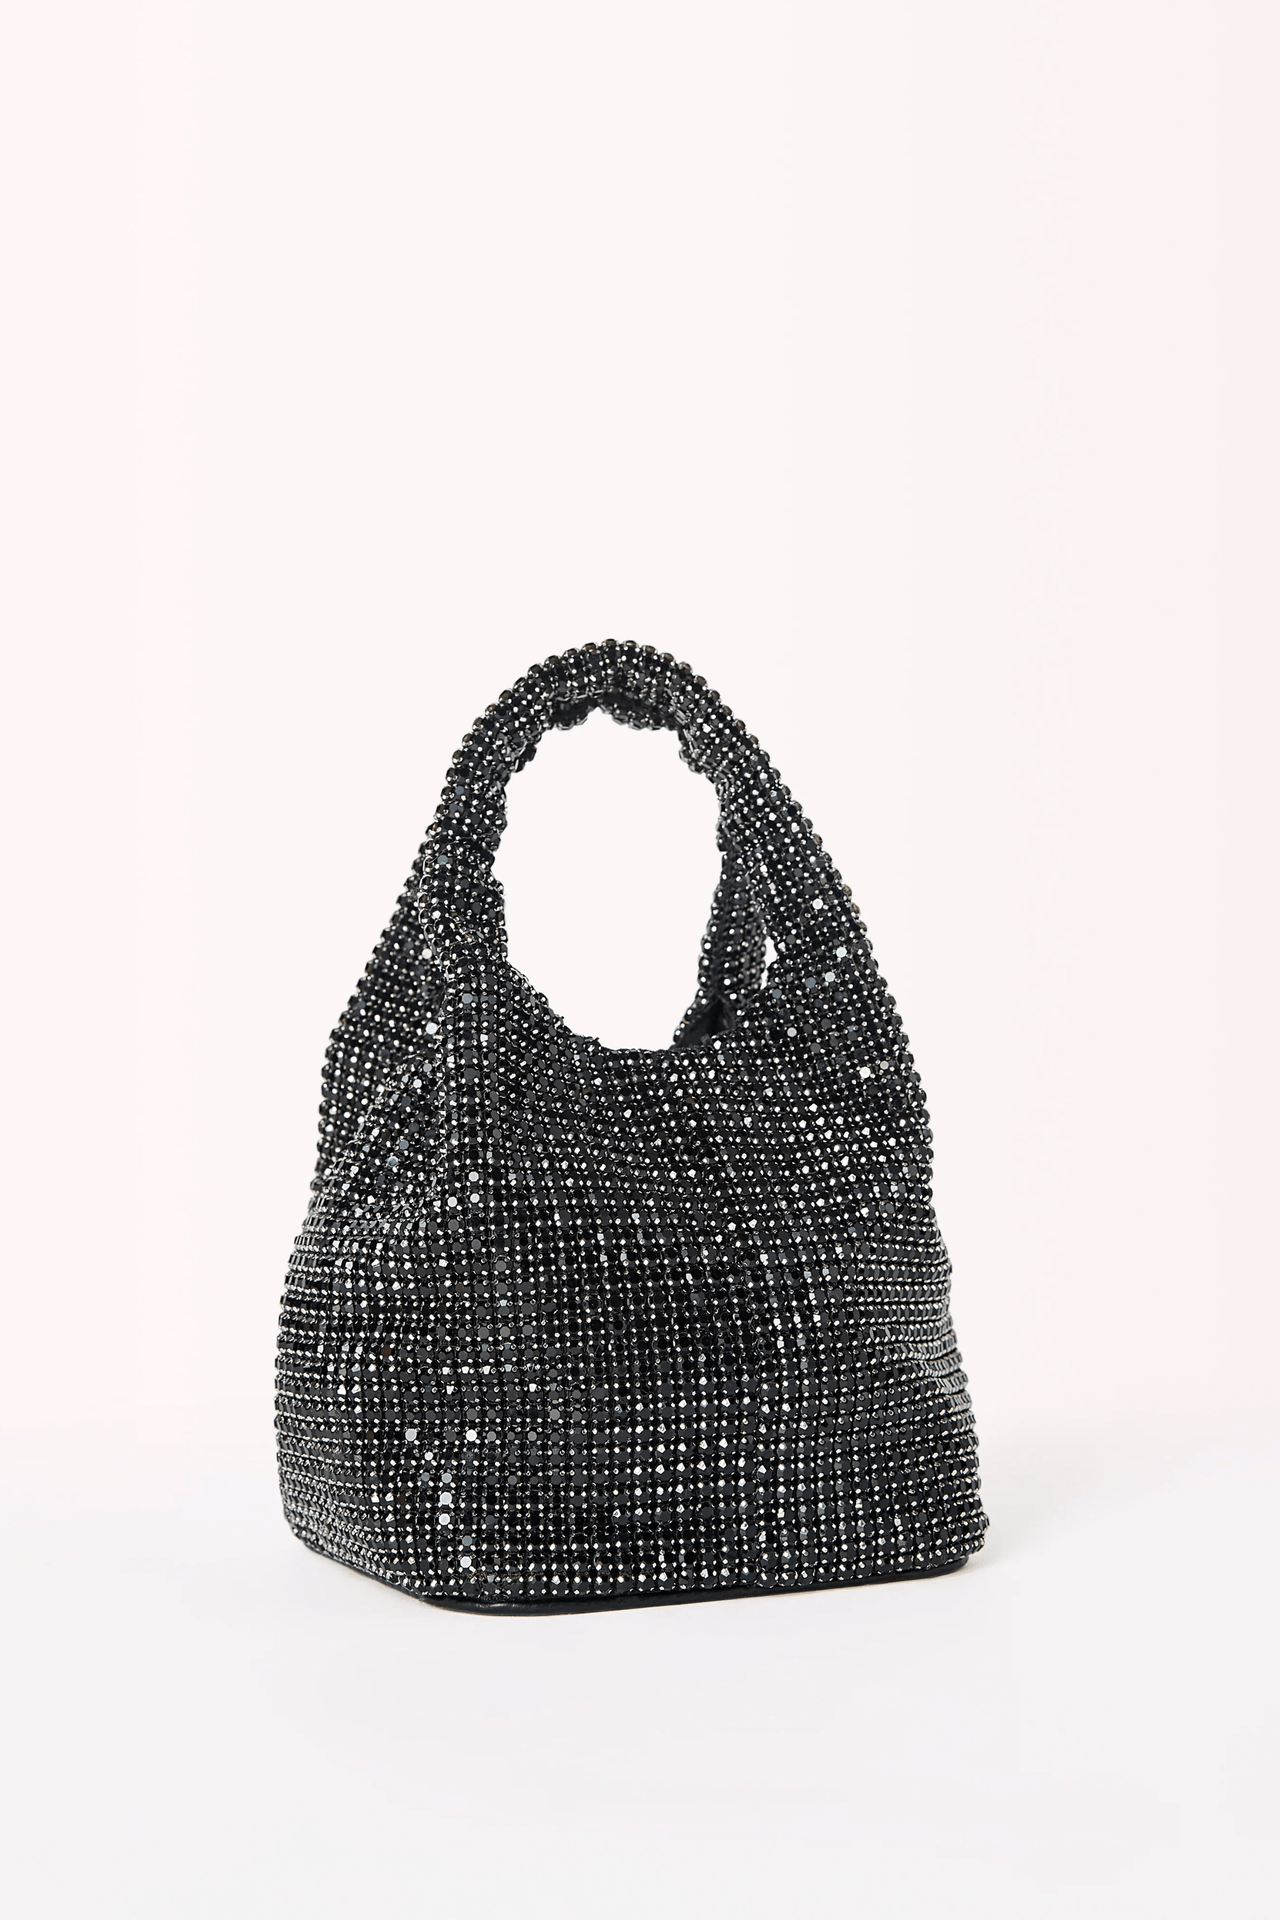 Tamara Rhinestone Handbag Black, Bag by Billini Shoes | LIT Boutique